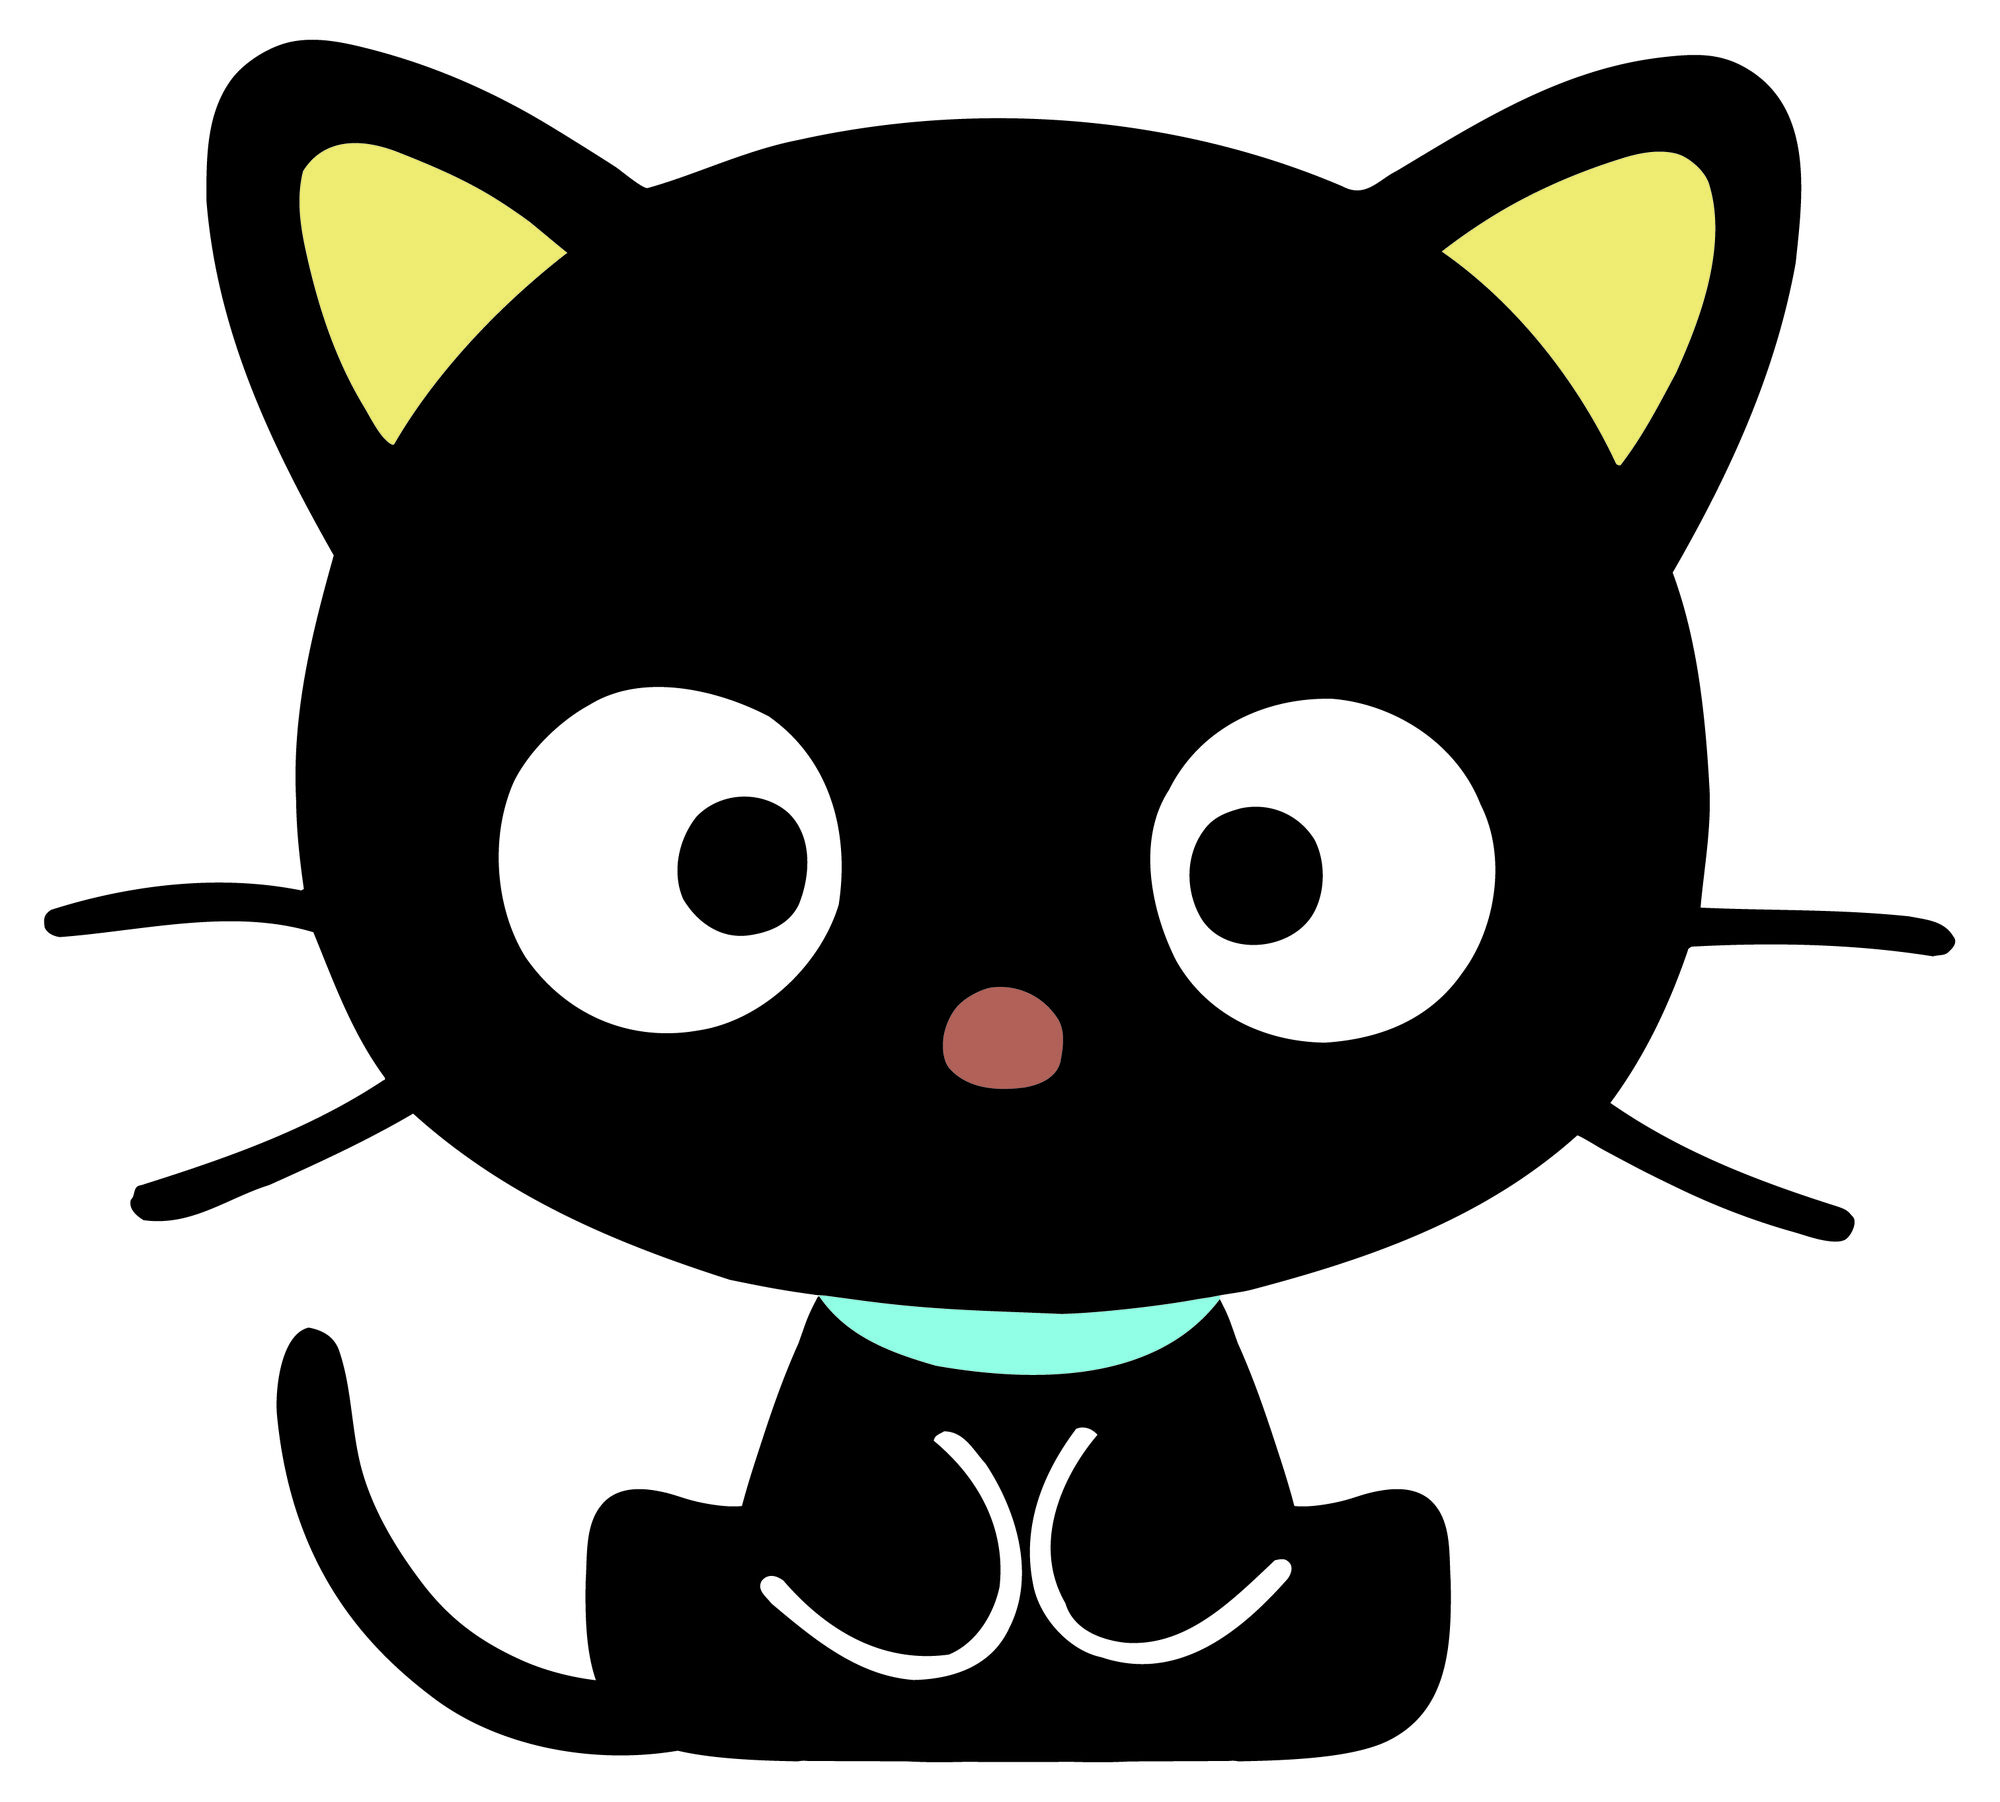 Chococat | Hello yoshi Wiki | FANDOM powered by Wikia